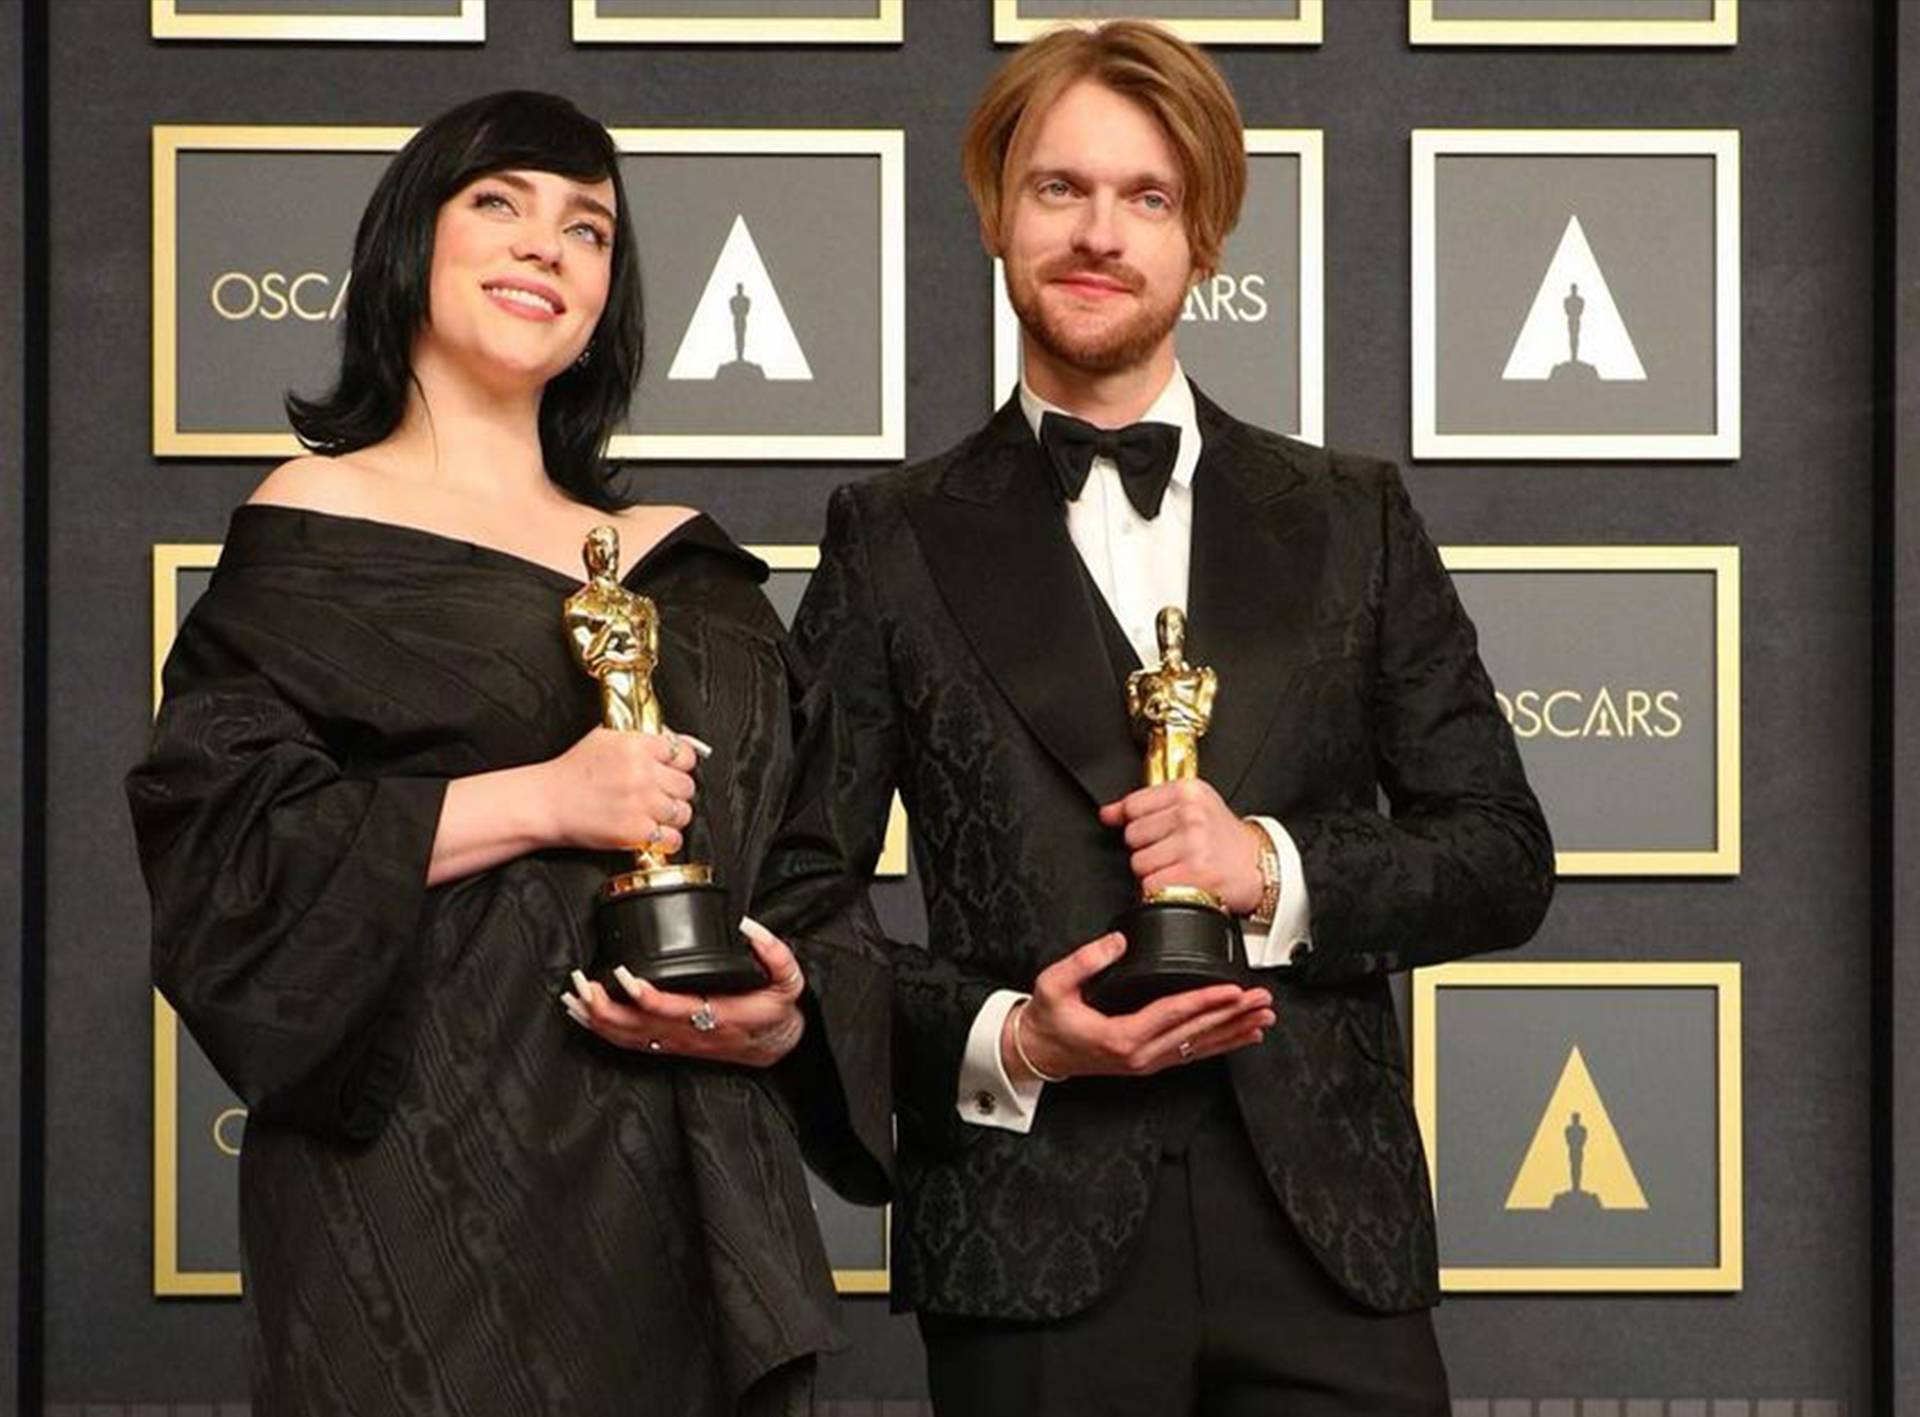 Billie Eilish and FINNEAS win Oscar for Best Song